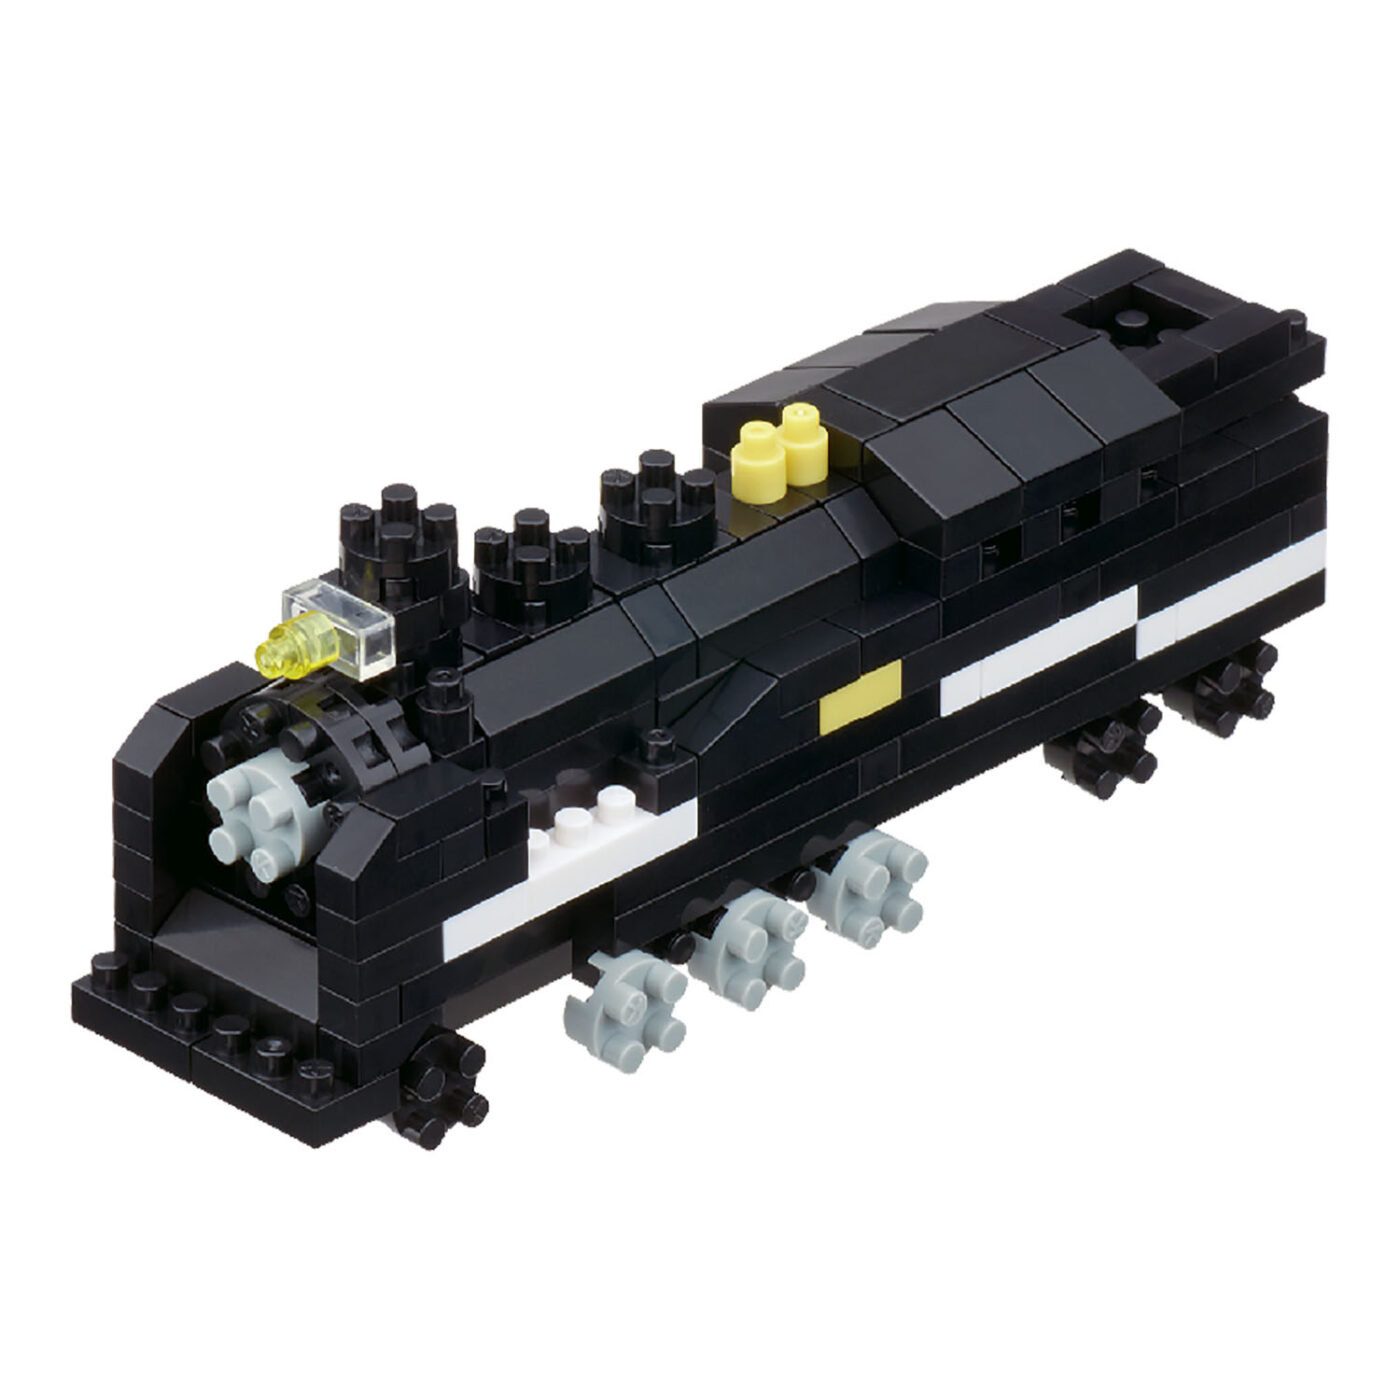 蒸気機関車(タンク式)の商品画像1